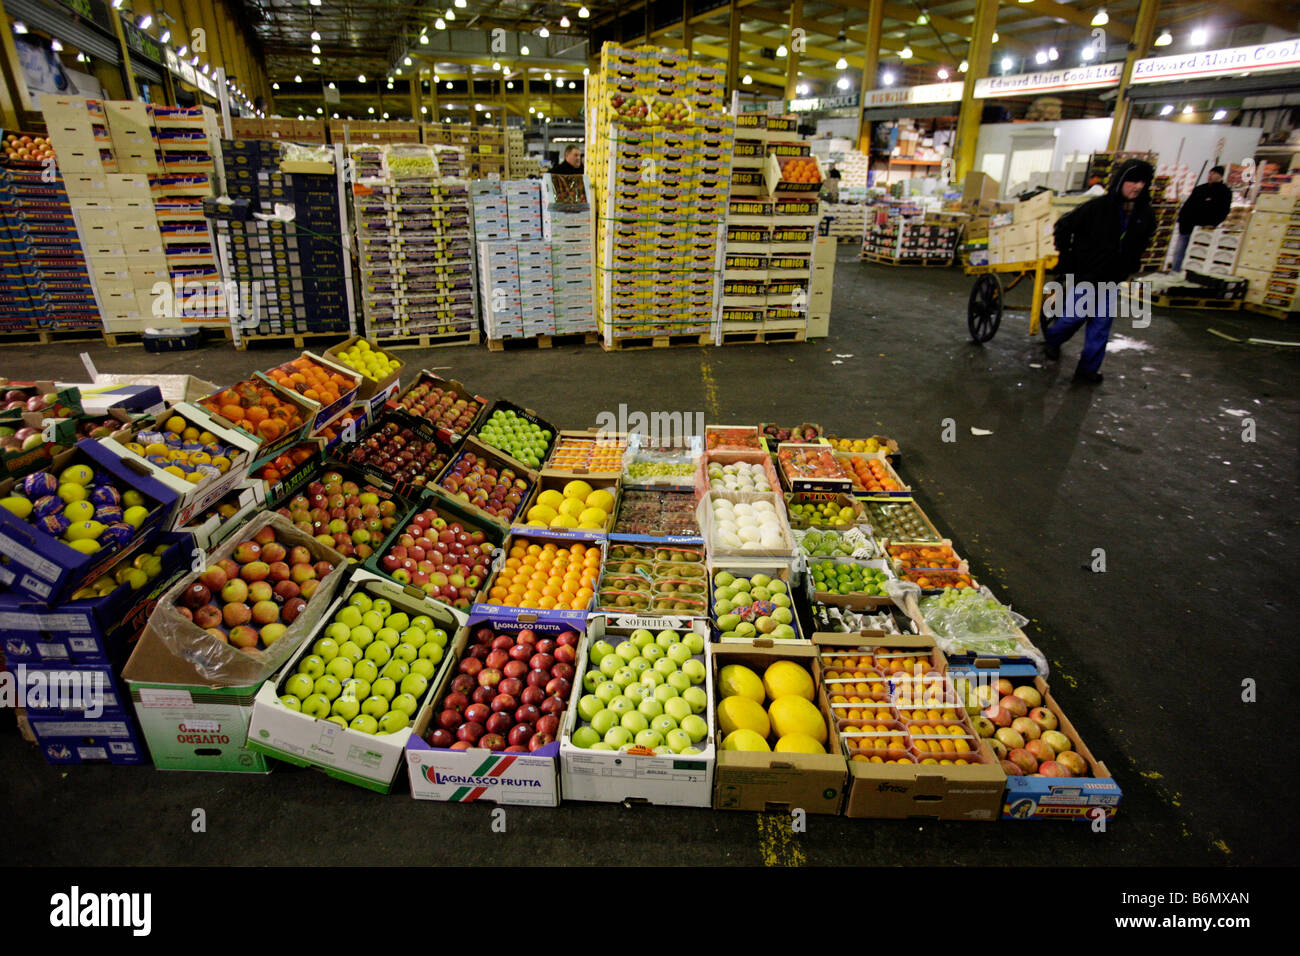 Am frühen Morgen im Bereich Obst und Gemüse in Birmingham Großhandelsmärkte Stockfoto